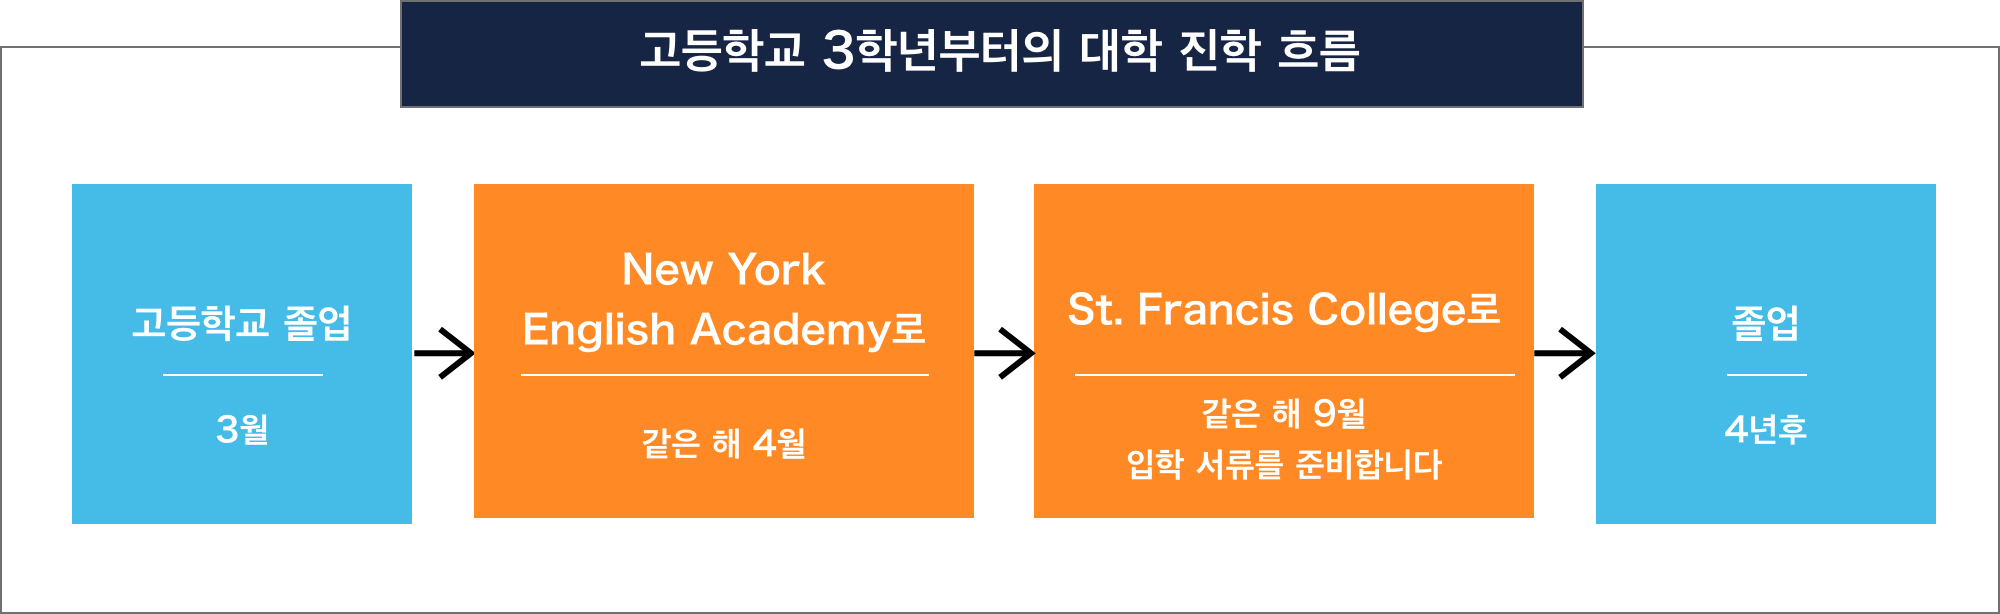 高校3年生からの大学進学の流れ 高校卒業 3月 New York
English Academyへ 同年4月 St. Francis Collegeへ 同年9月
入学書類の準備を行います 卒業 4年後